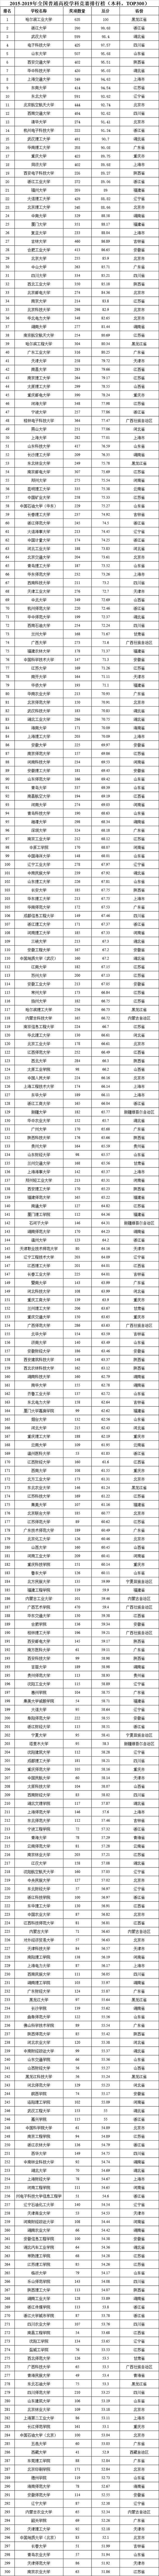 2015-2019年全国普通高校学科竞赛排行榜本科TOP300